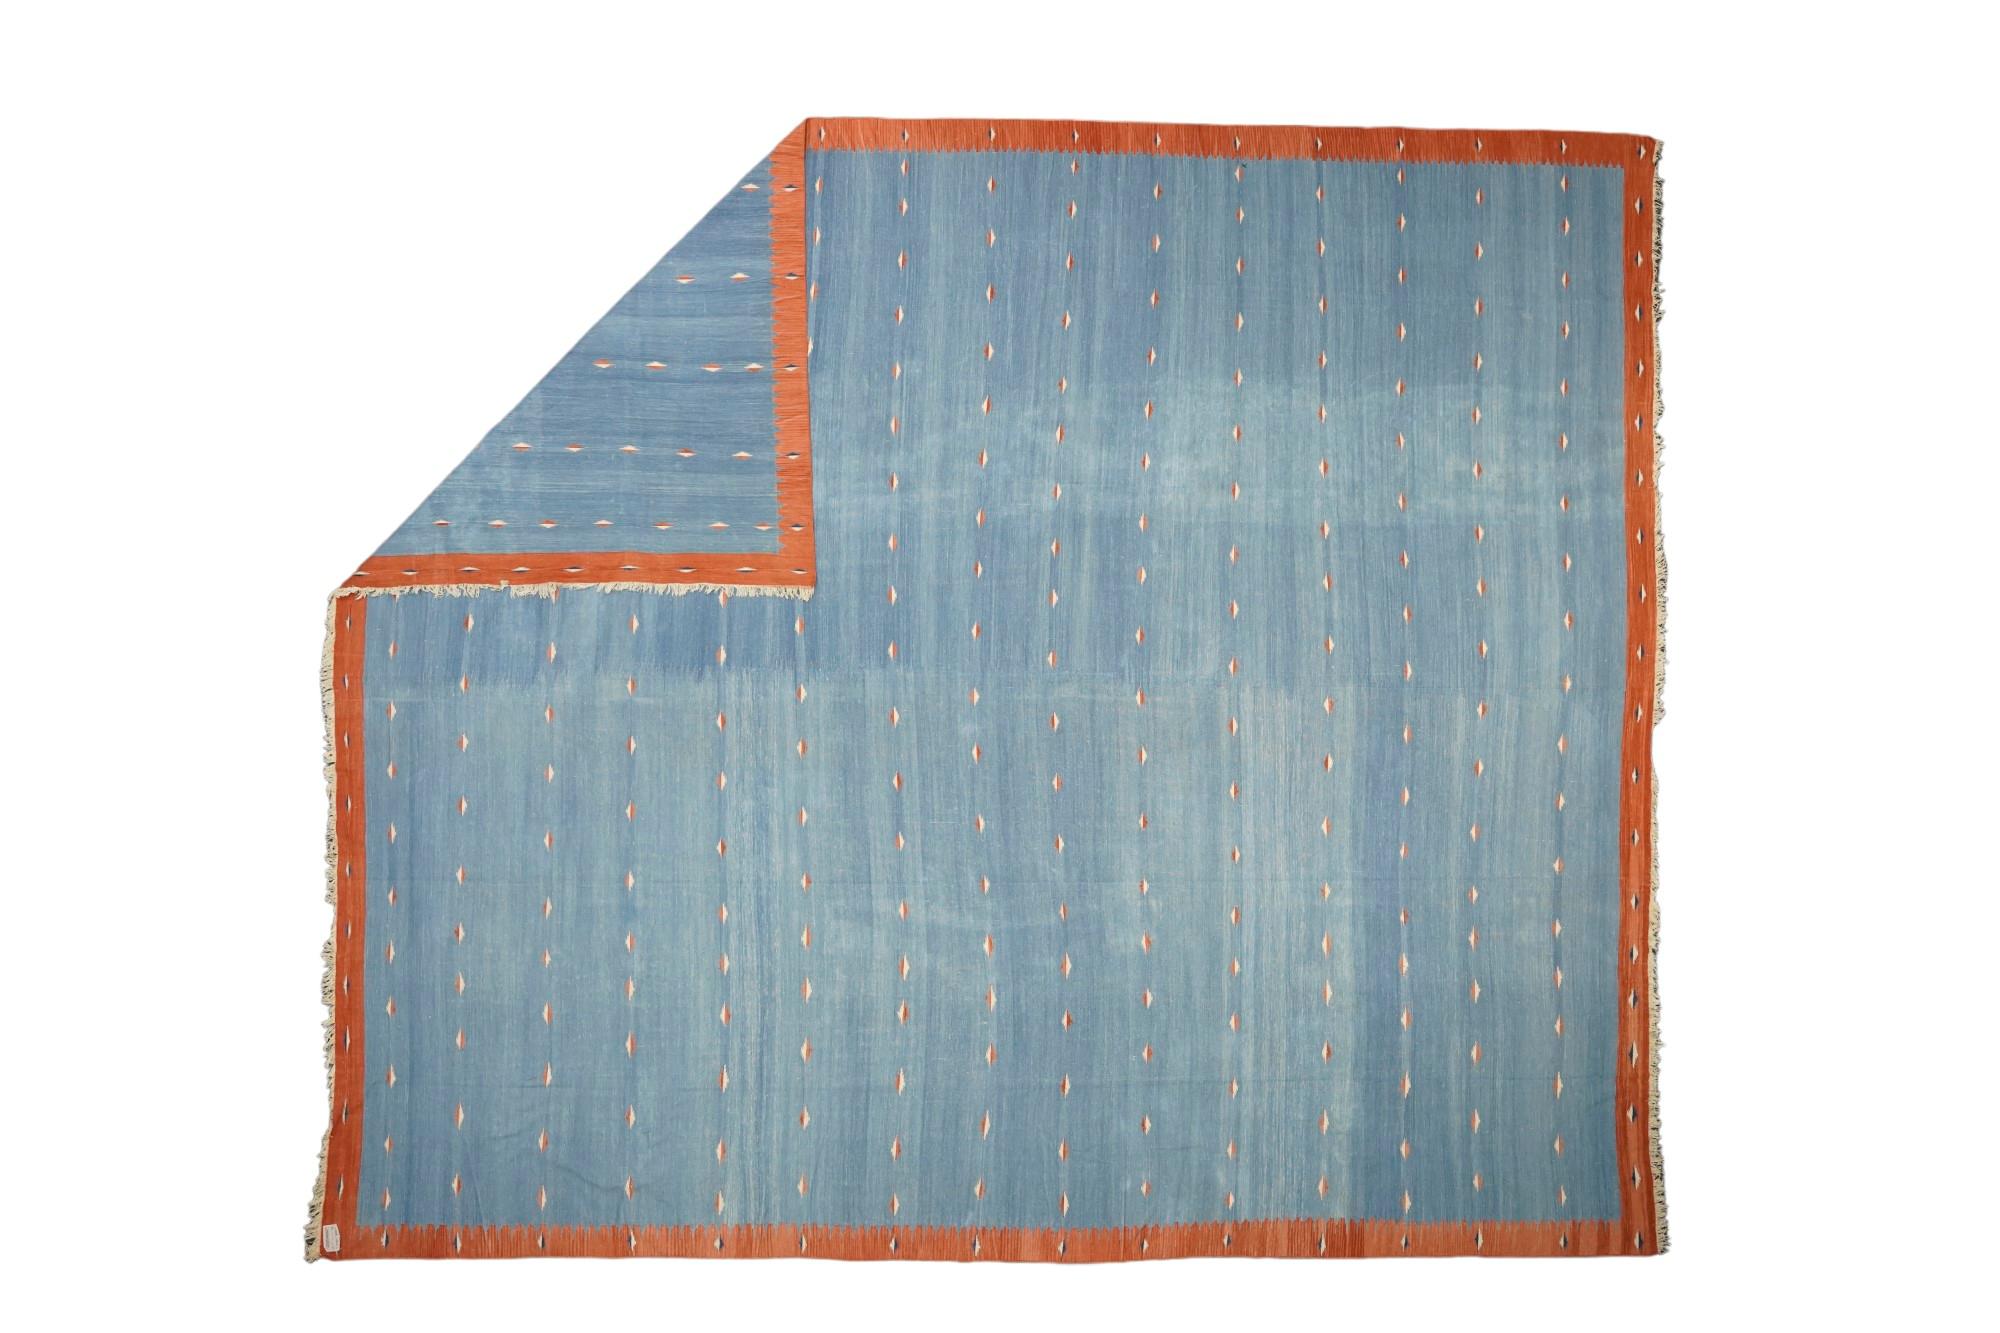 Dieser 12x14 große Teppich ist ein seltener Vintage-Dhurrie-Teppich aus einer aufregenden neuen Kuration aus der Mitte des Jahrhunderts von Rug &New Kilim. Das handgewebte Flachgewebe aus Wolle stammt aus Indien (ca. 1950-1960) und weist blaue